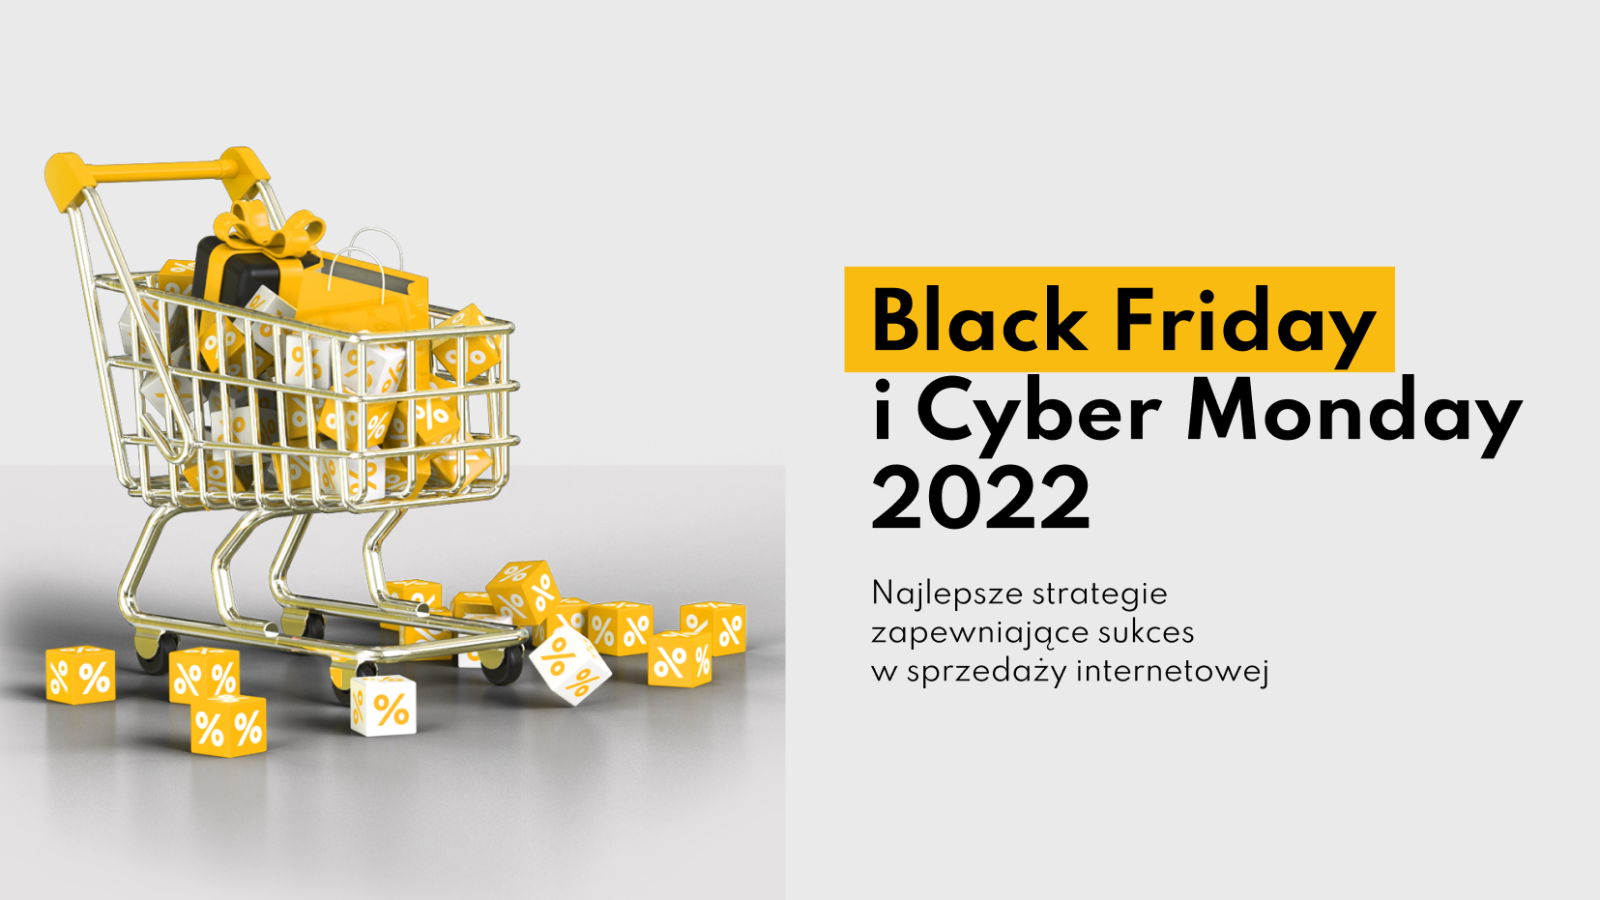 Black Friday i Cyber Monday 2022: Najlepsze strategie zapewniające sukces w sprzedaży internetowej￼